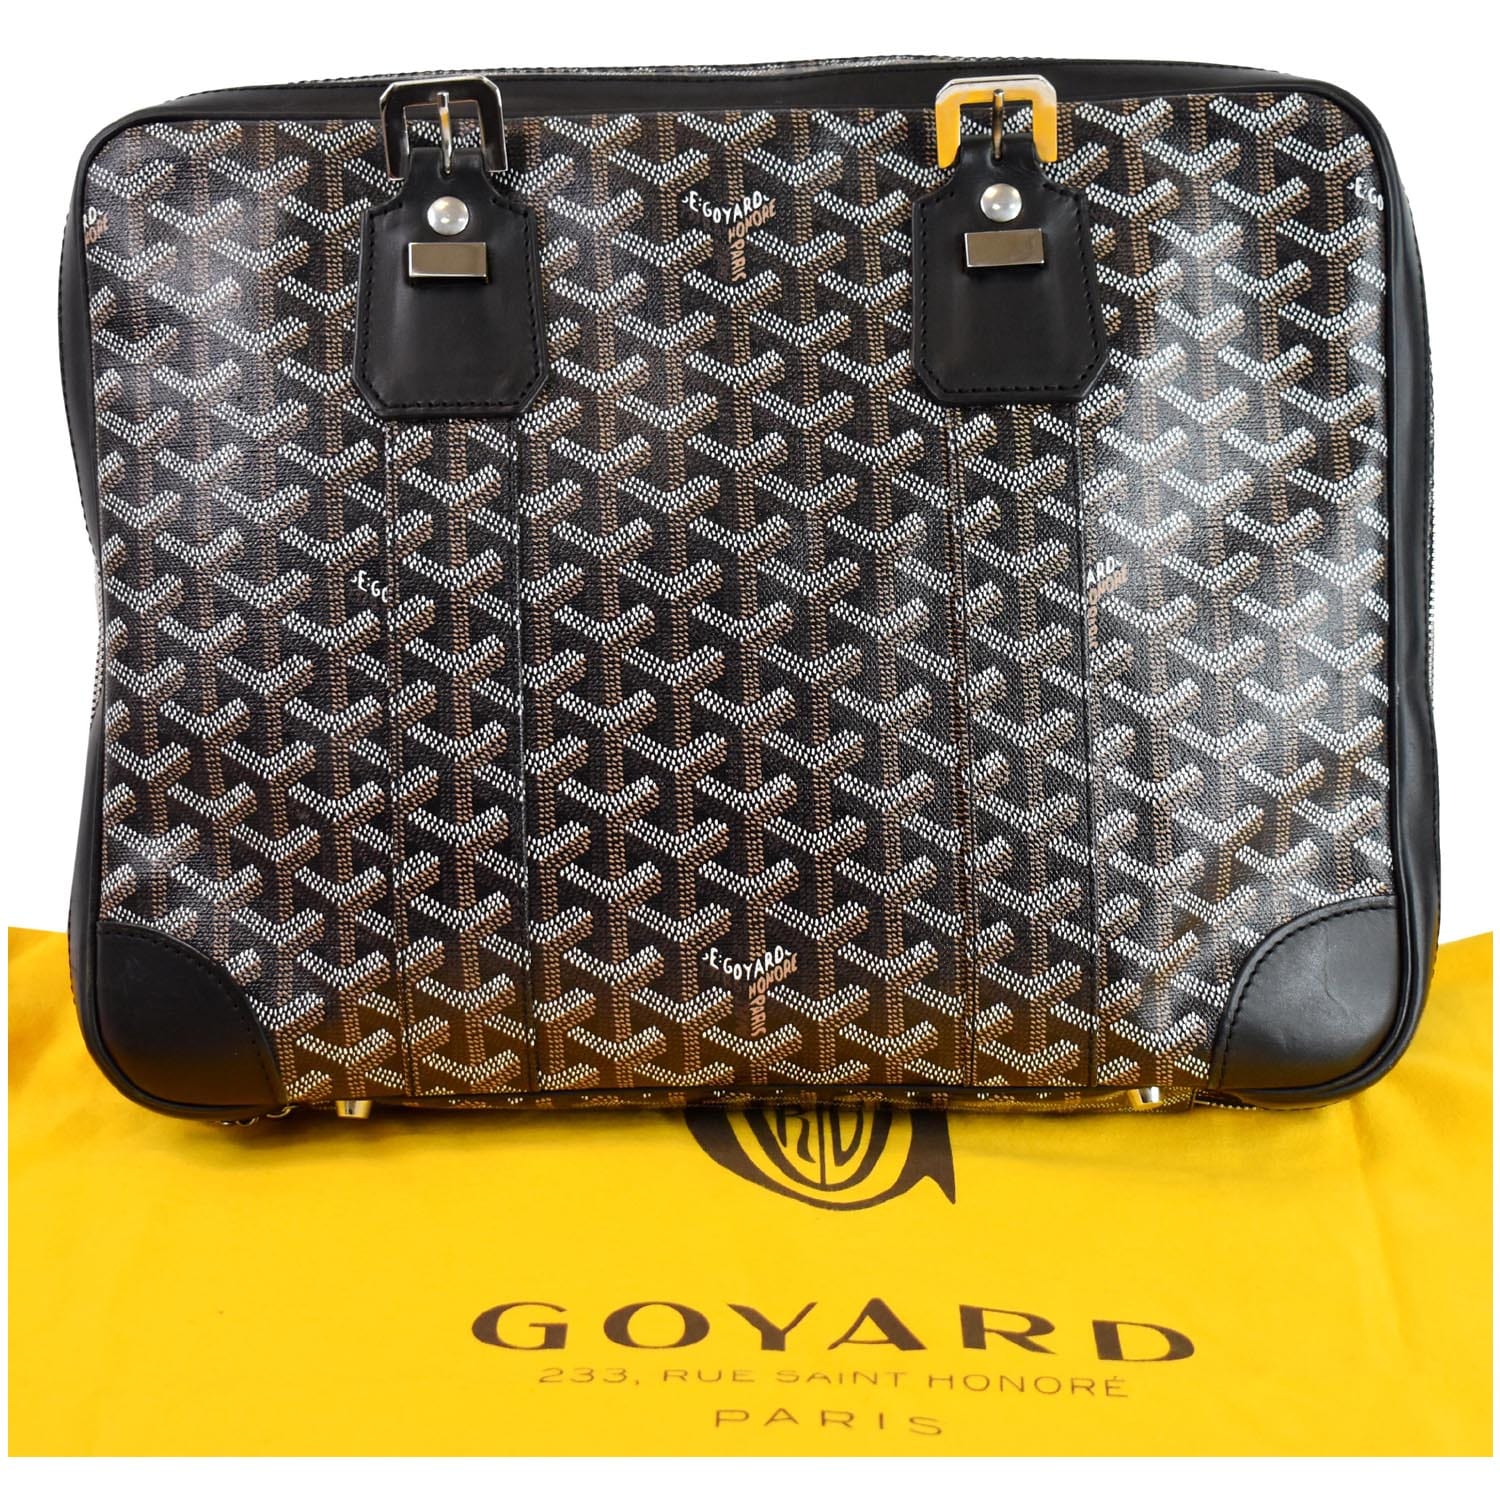 GOYARD Goyardine 233 PM Shoulder Bag Black Gold 1151444